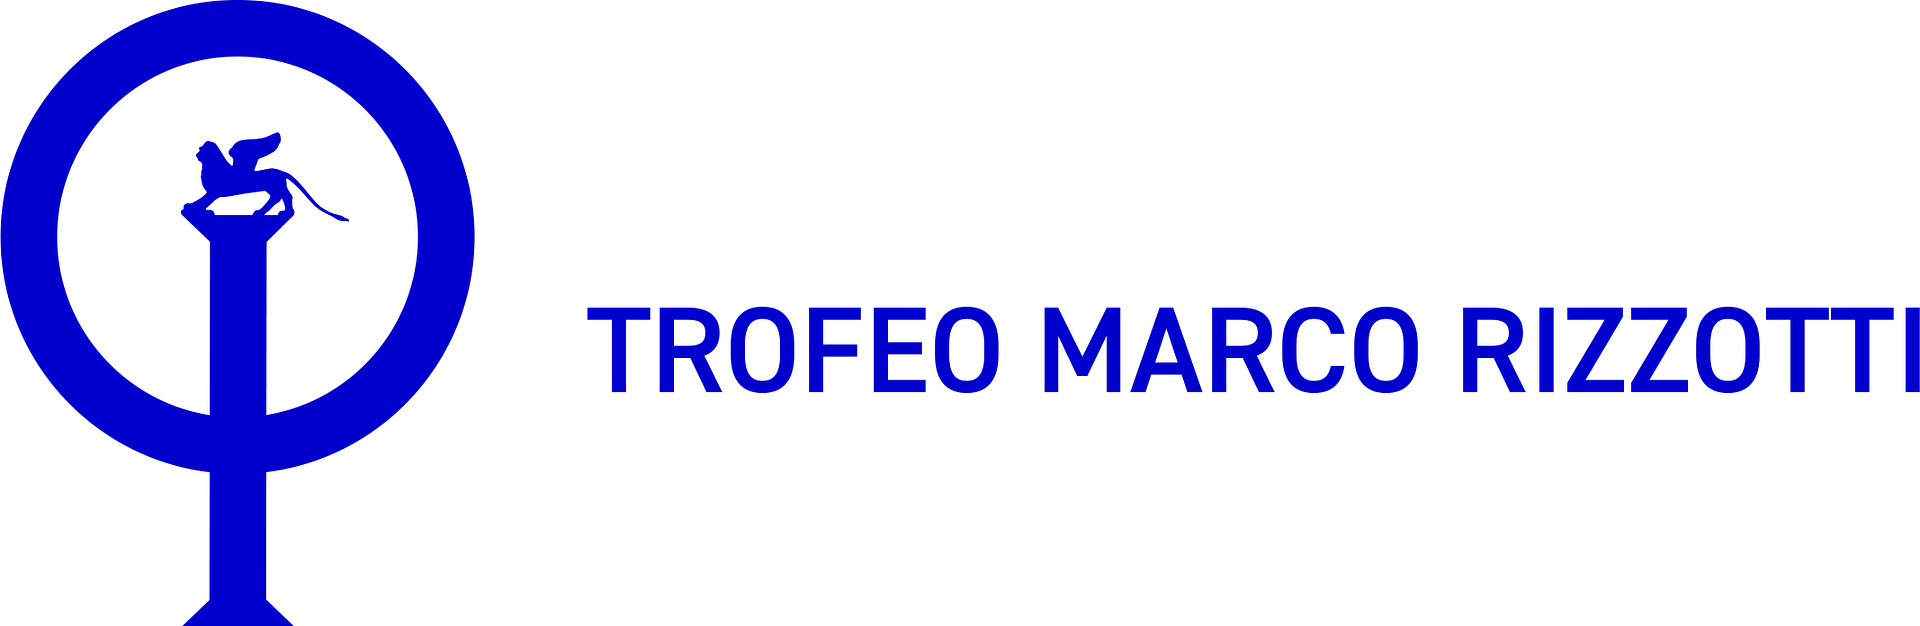 36° Trofeo Marco Rizzotti